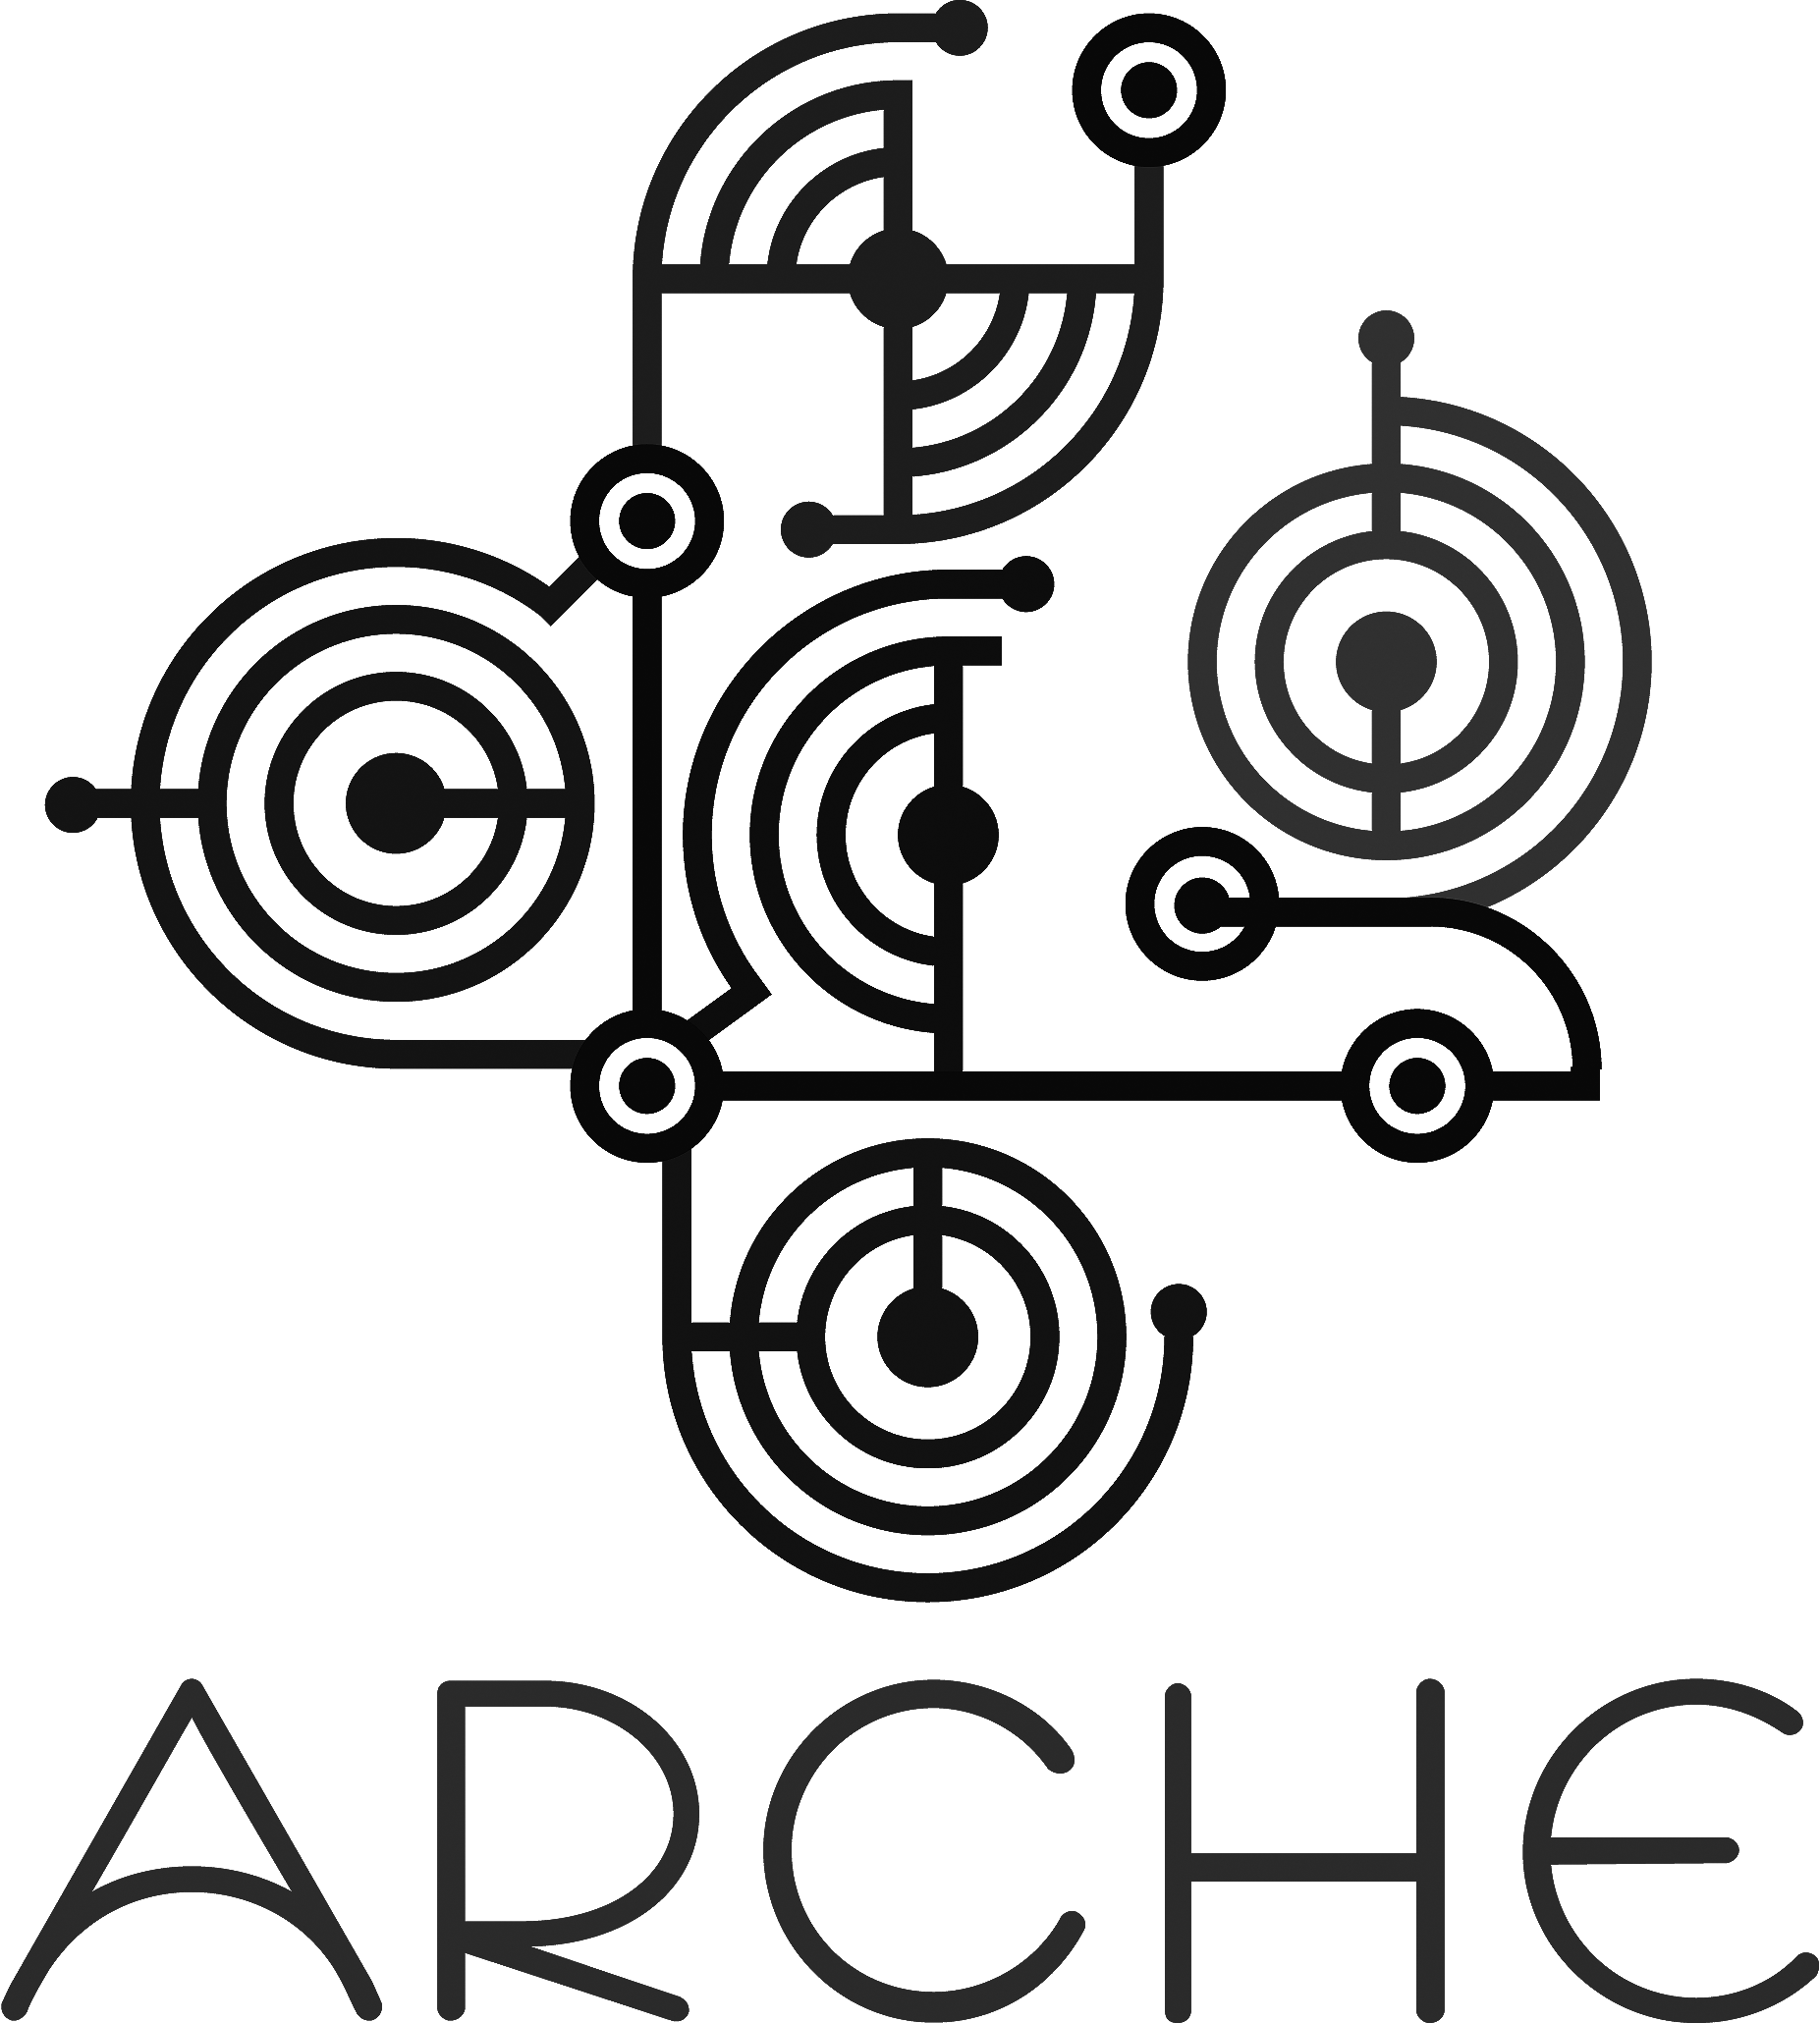 Grupo Arche